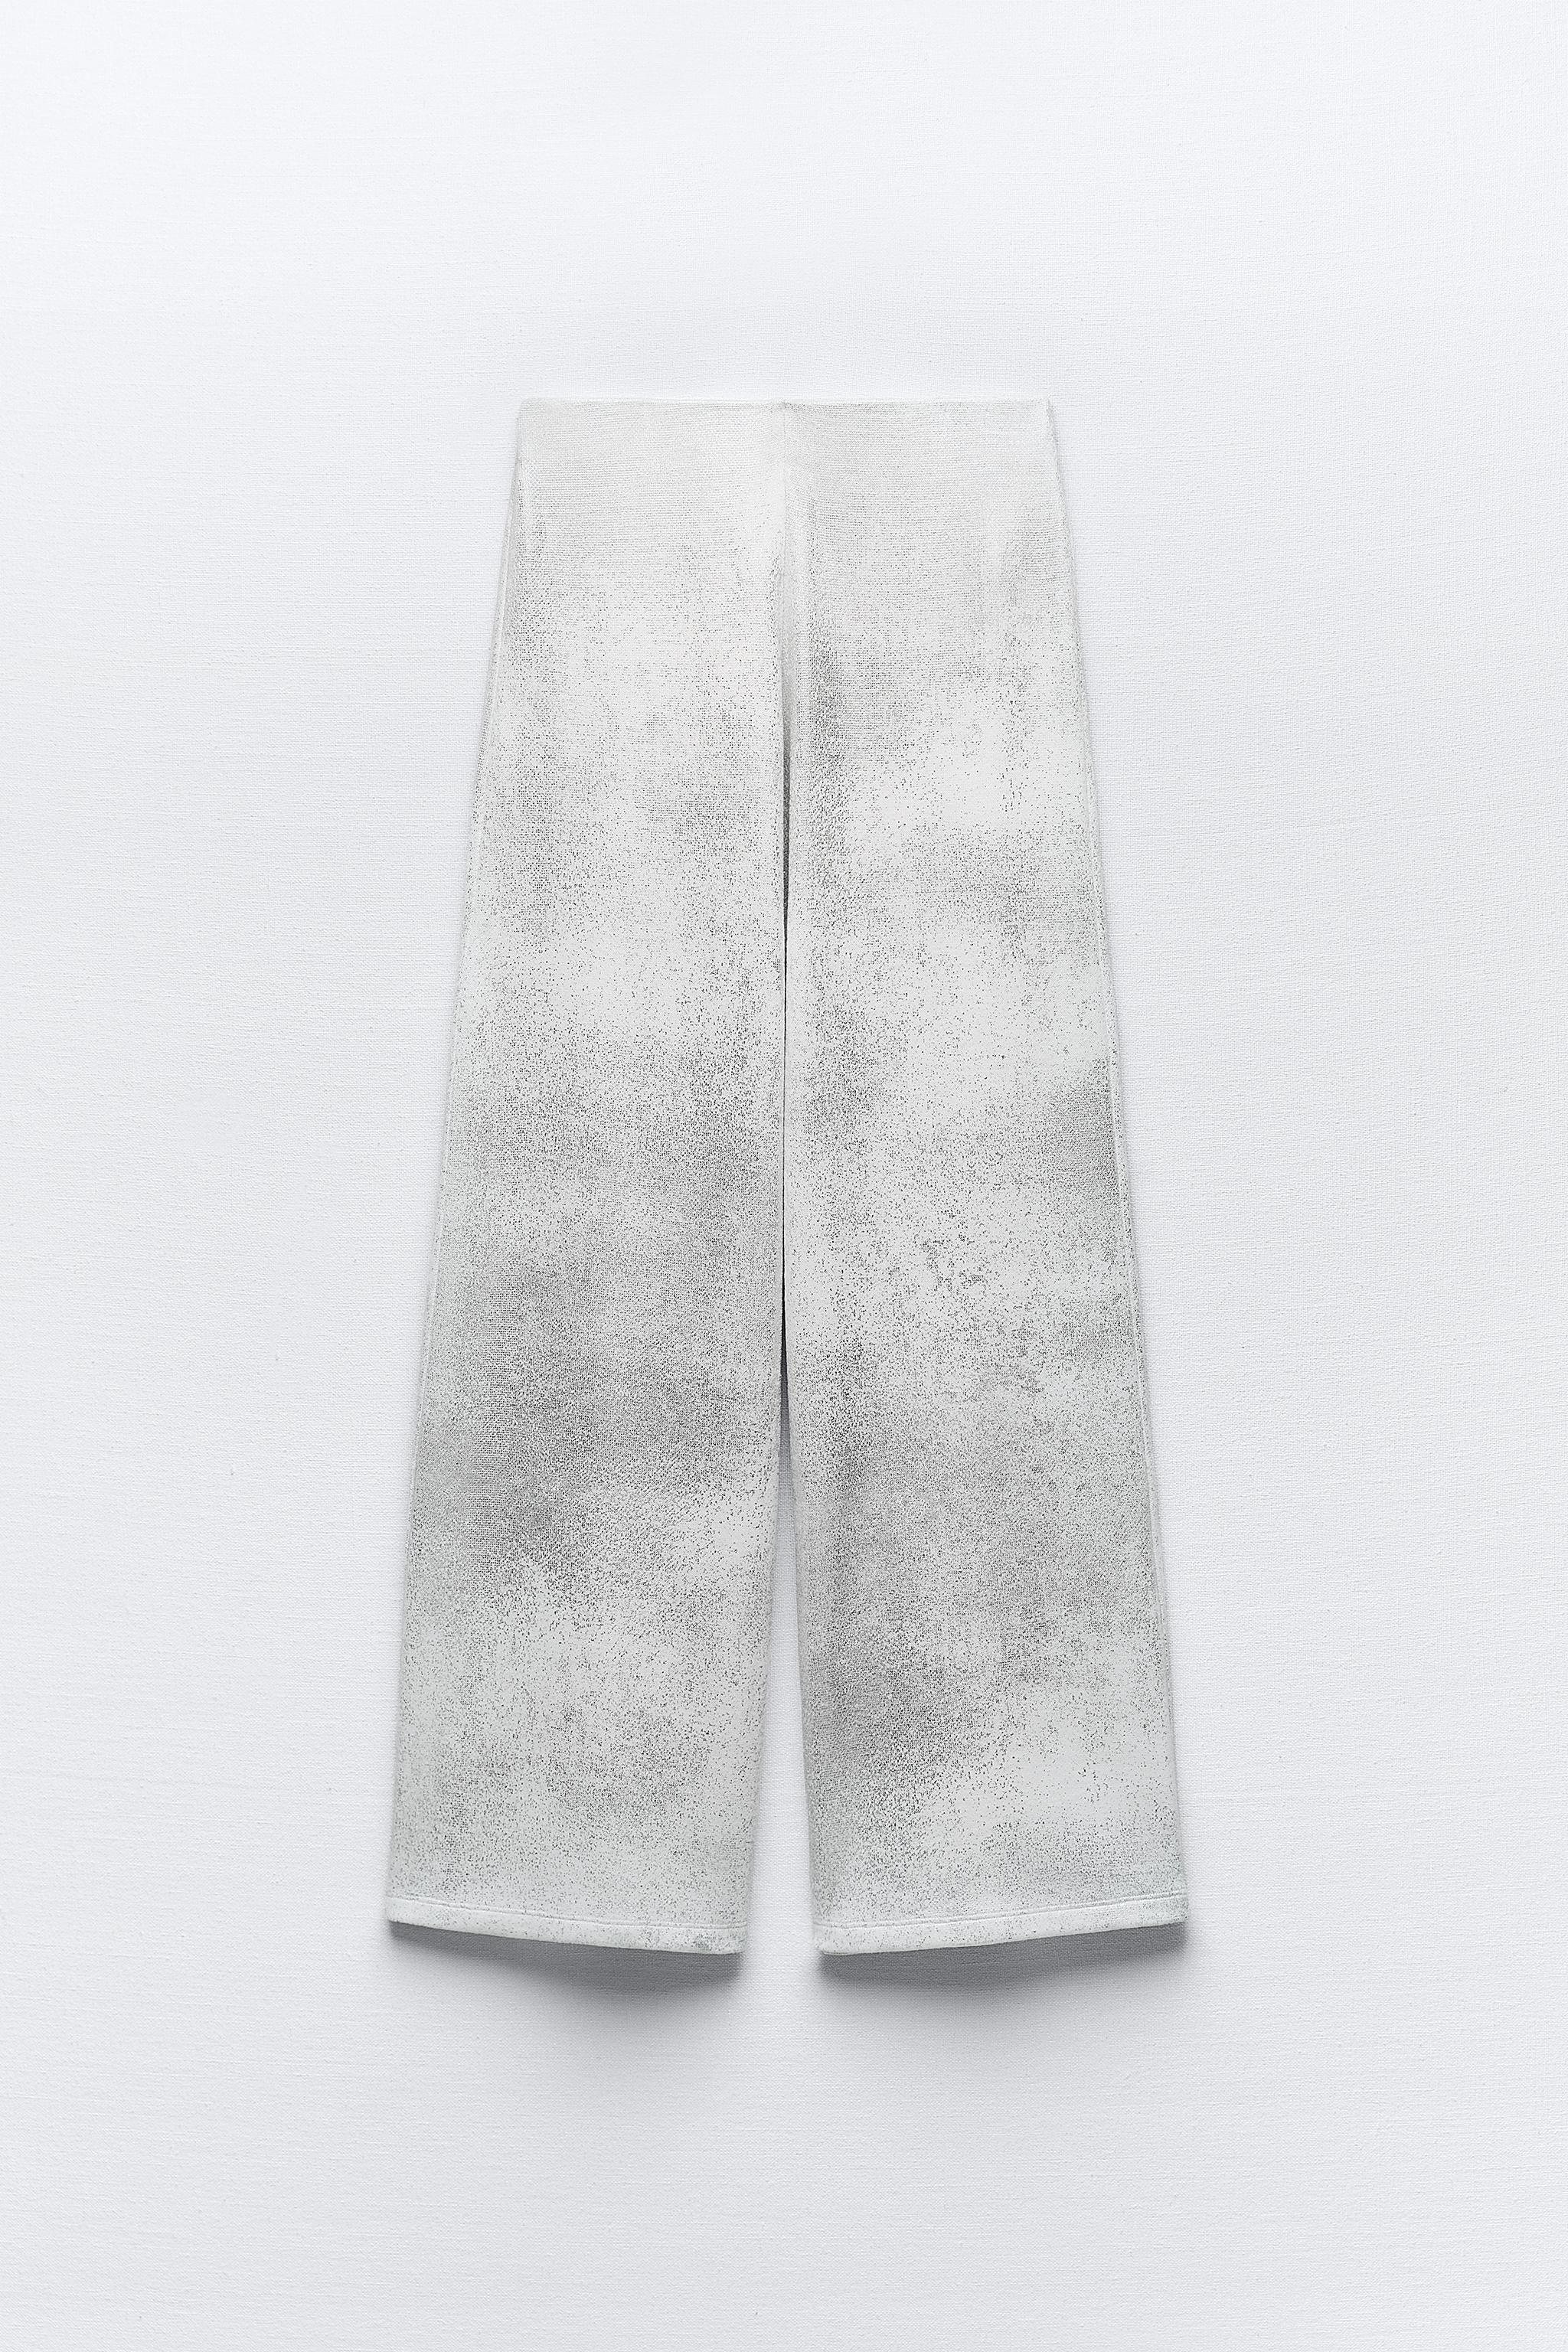 Silver Metallic Pants, Glitter Pants, Silver Pants